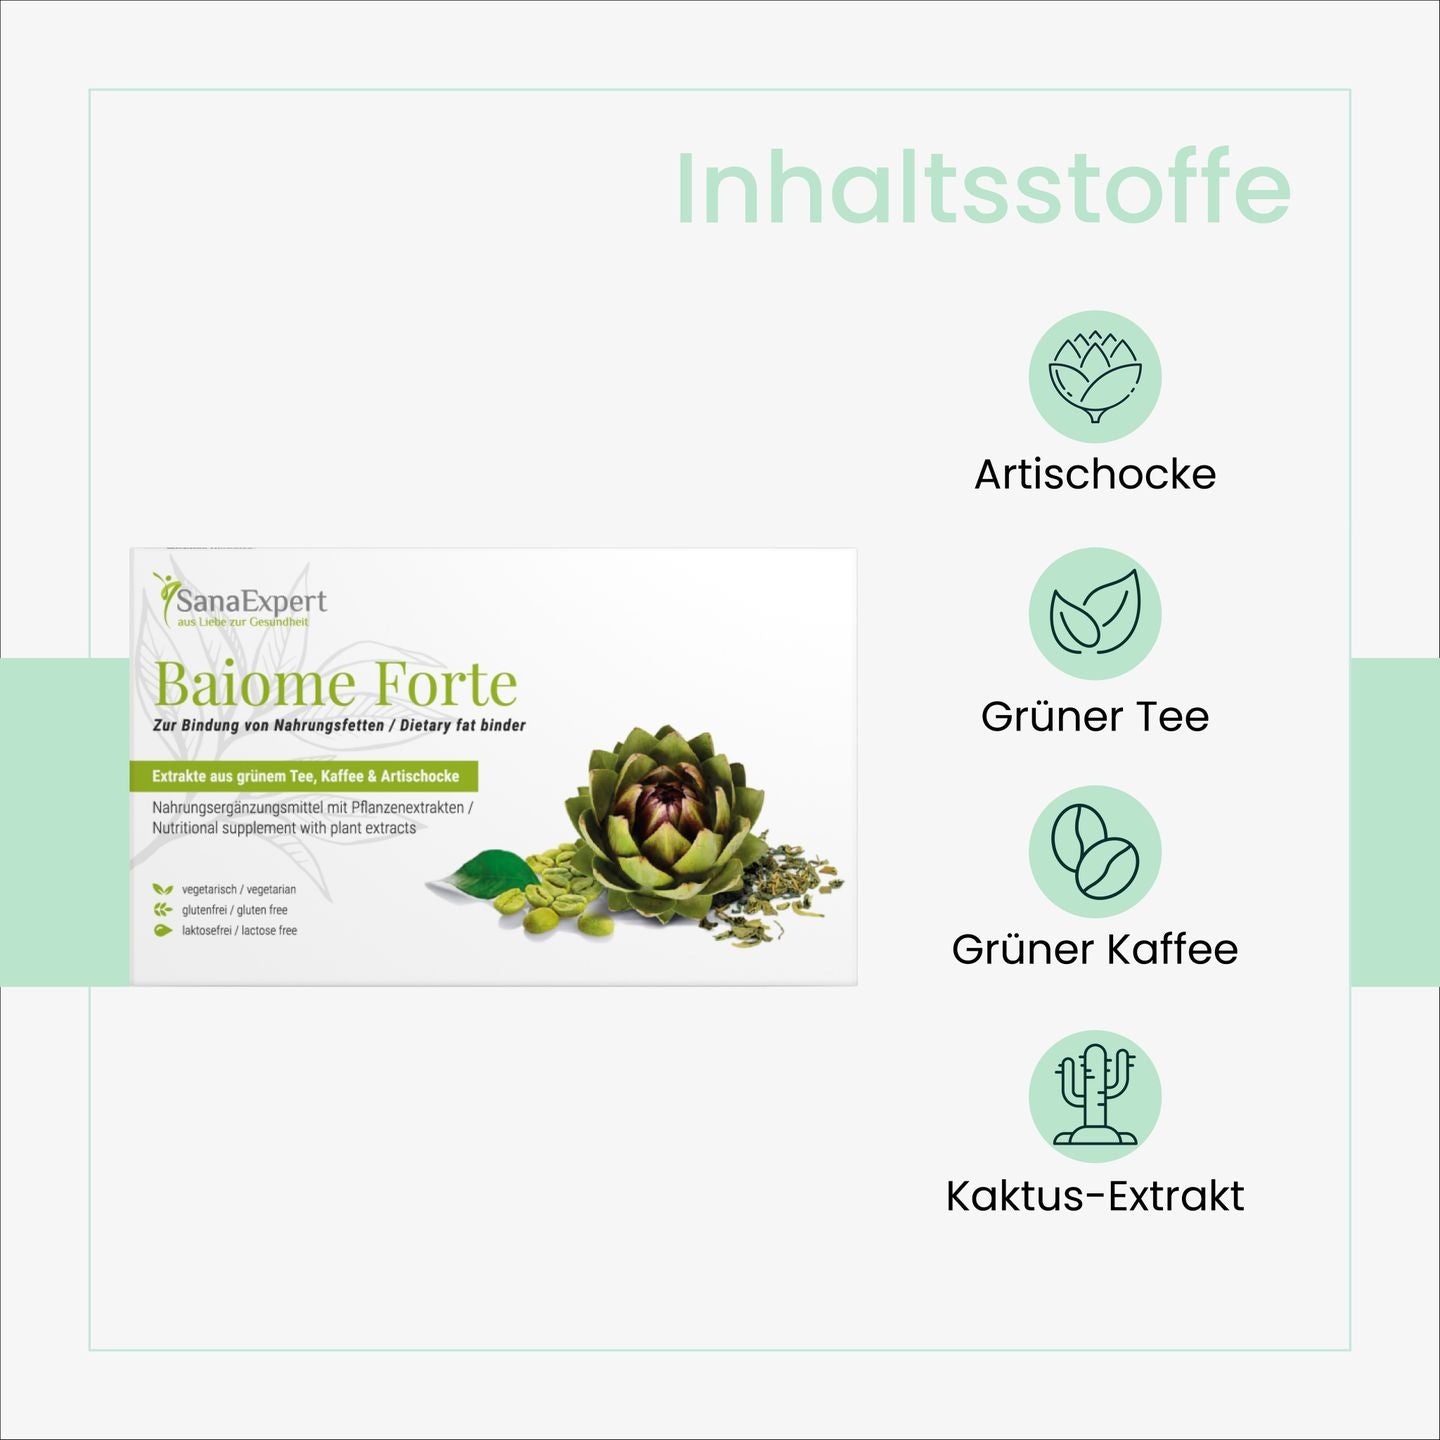 Übersicht der natürlichen Inhaltsstoffe von SanaExpert Baiome Forte, darunter Artischocke, Grüner Tee und Kaktus-Extrakt, visuell dargestellt auf einem klaren Hintergrund.